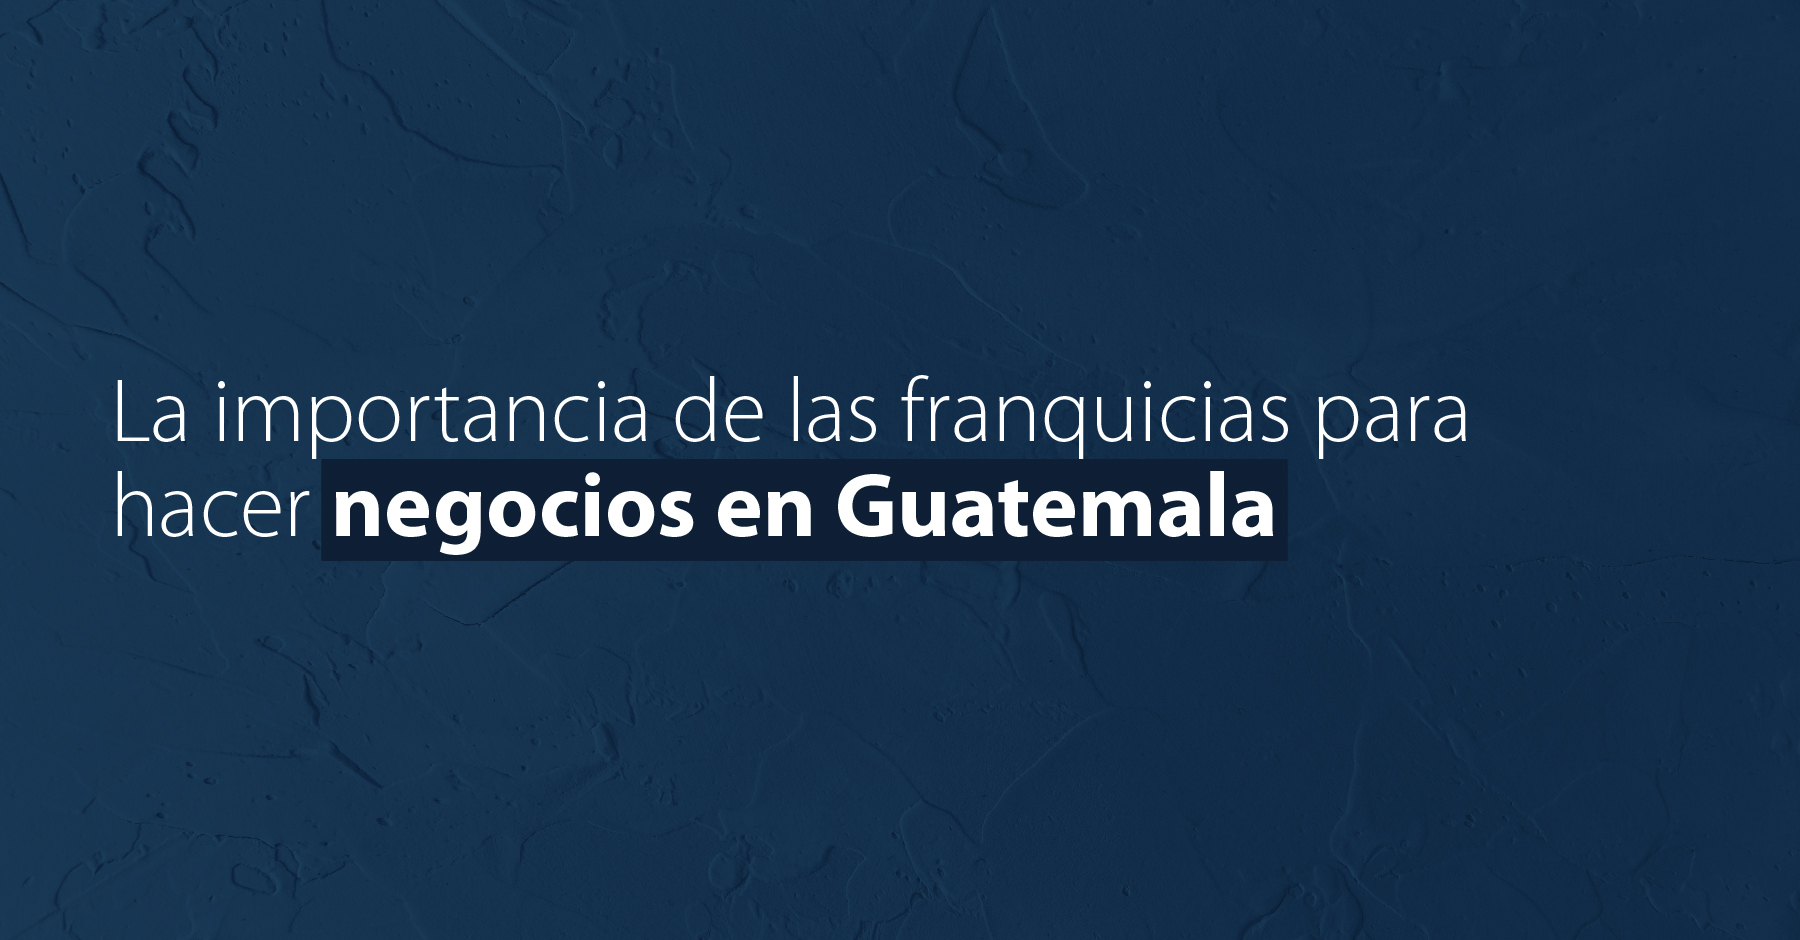 La importancia de las franquicias para hacer negocios en Guatemala